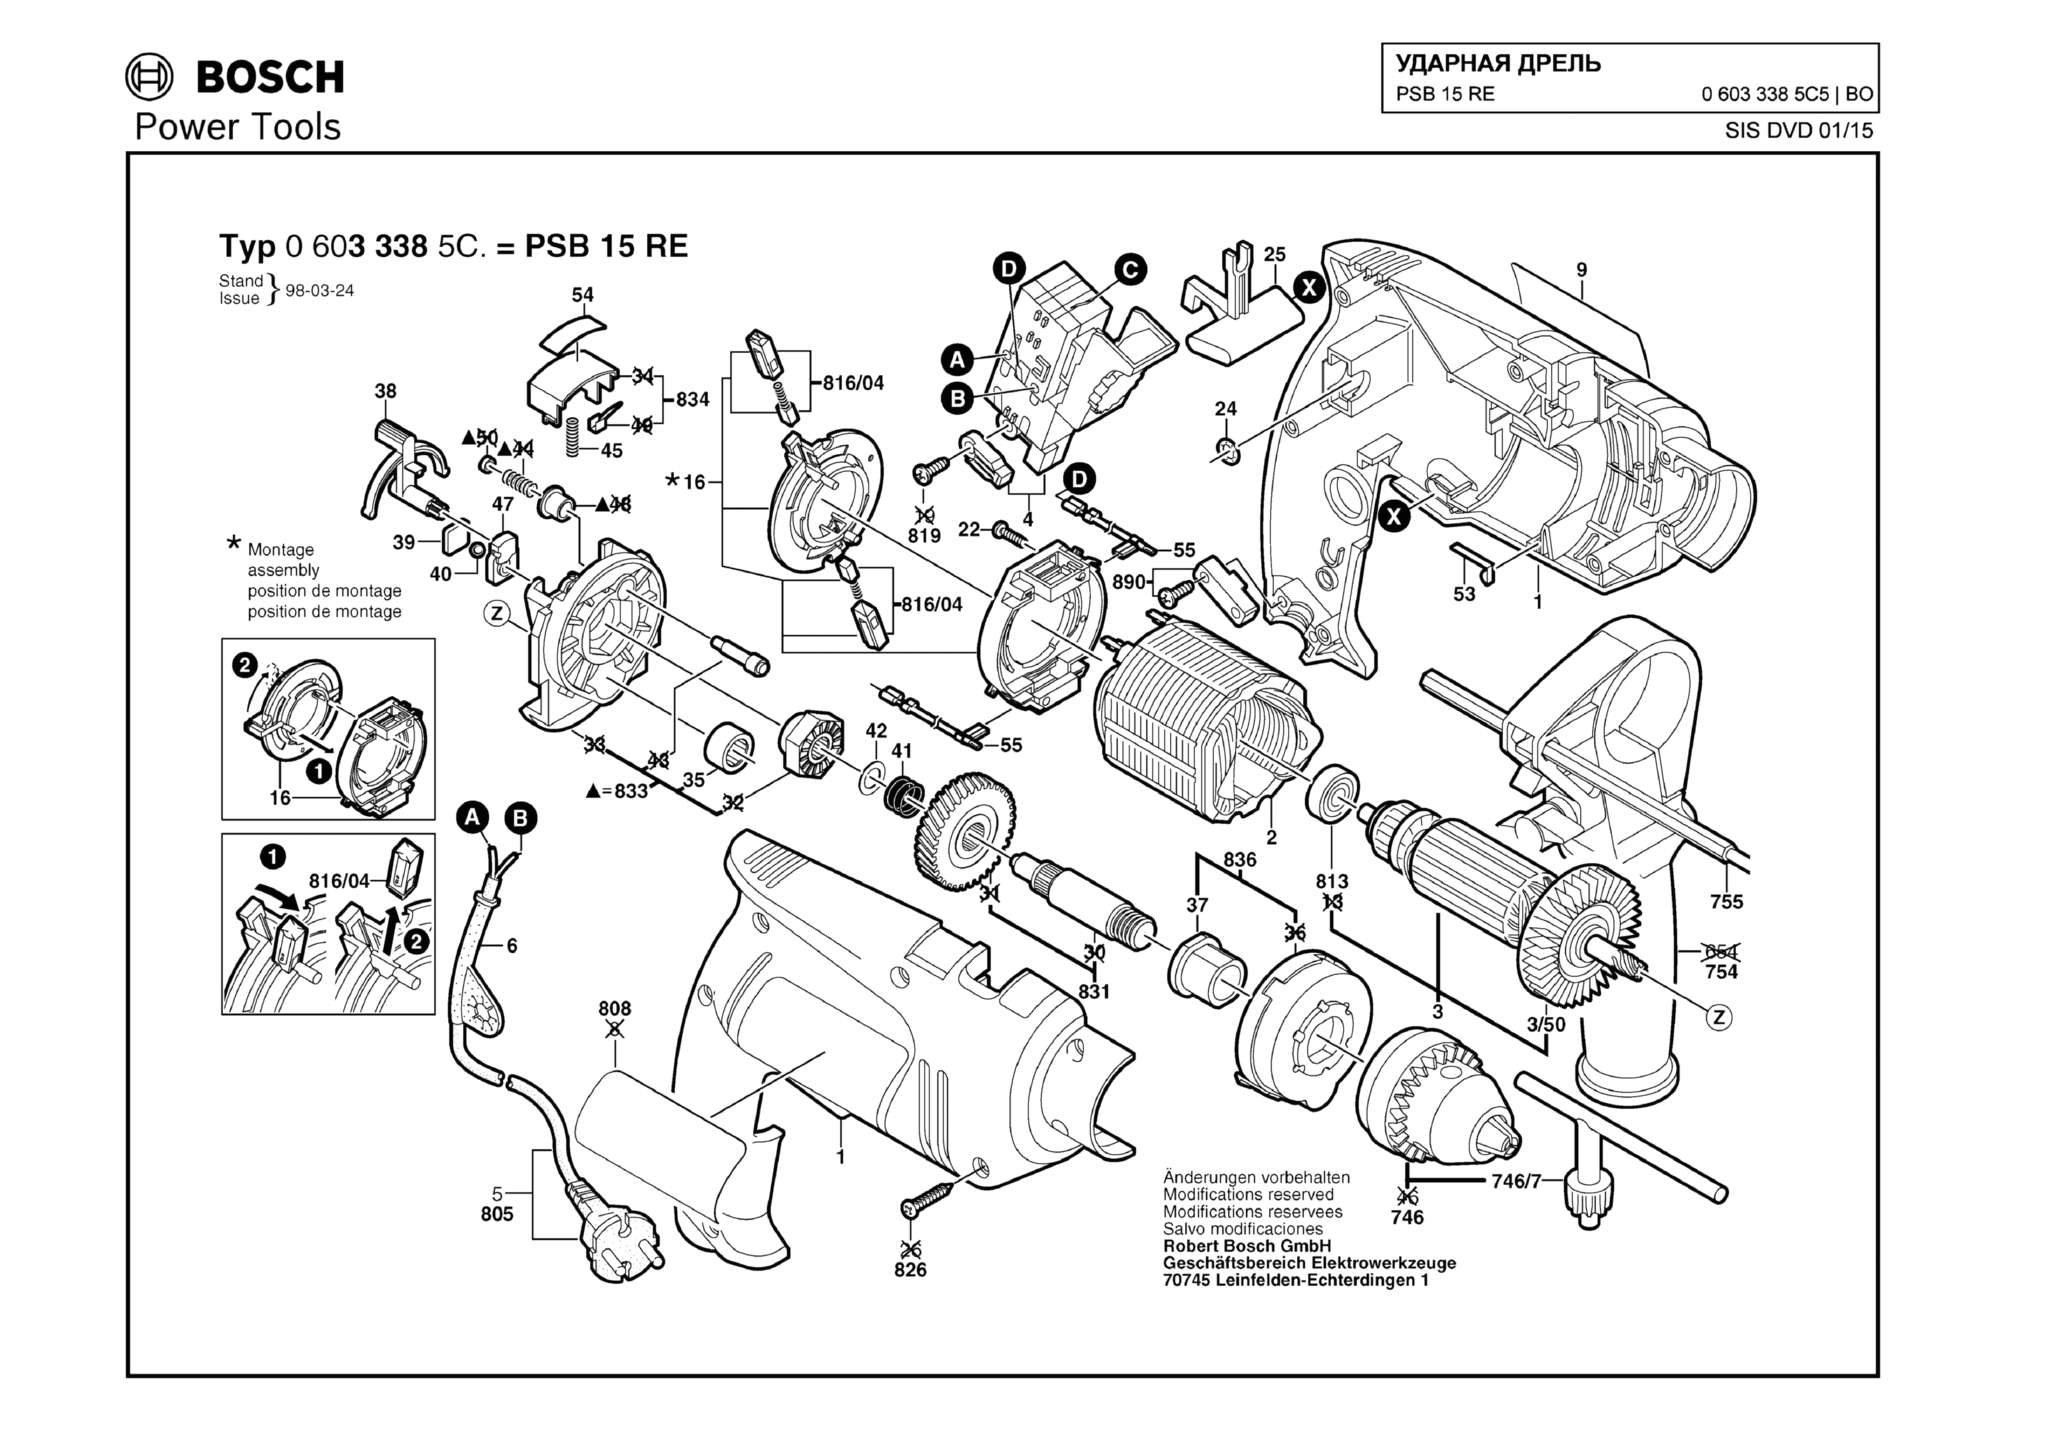 Запчасти, схема и деталировка Bosch PSB 15 RE (ТИП 06033385C5)